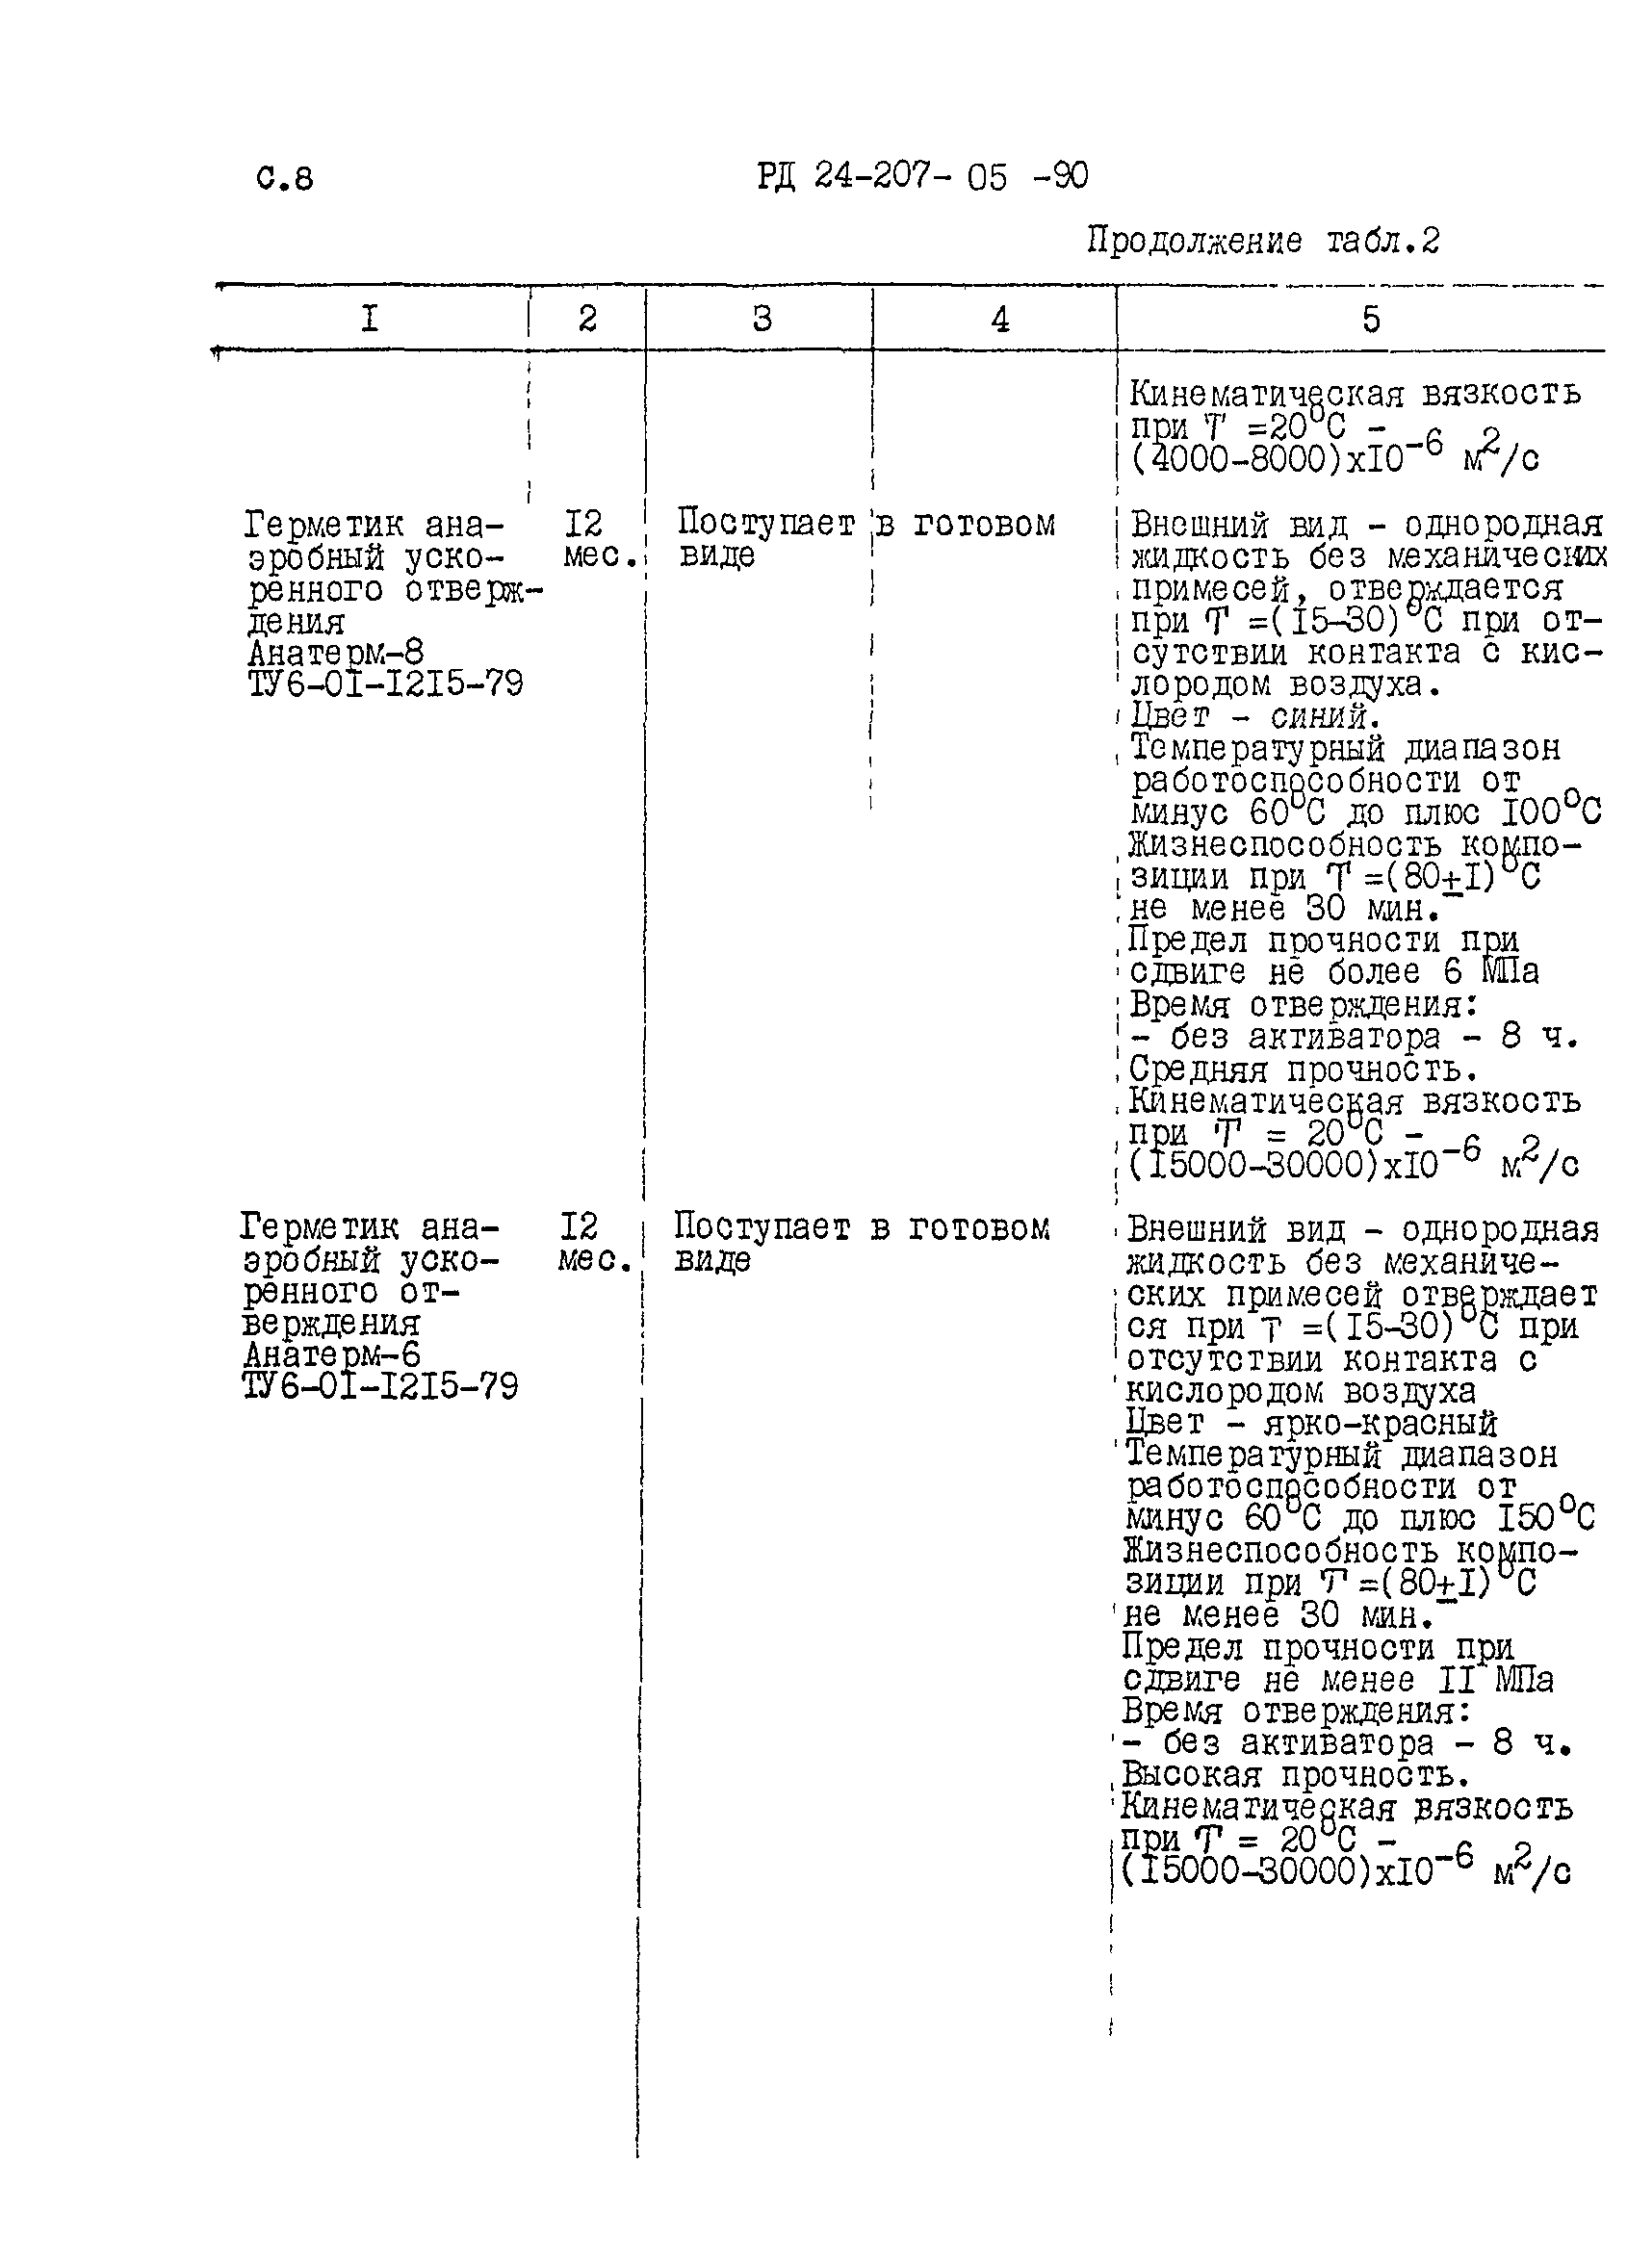 РД 24.207.05-90